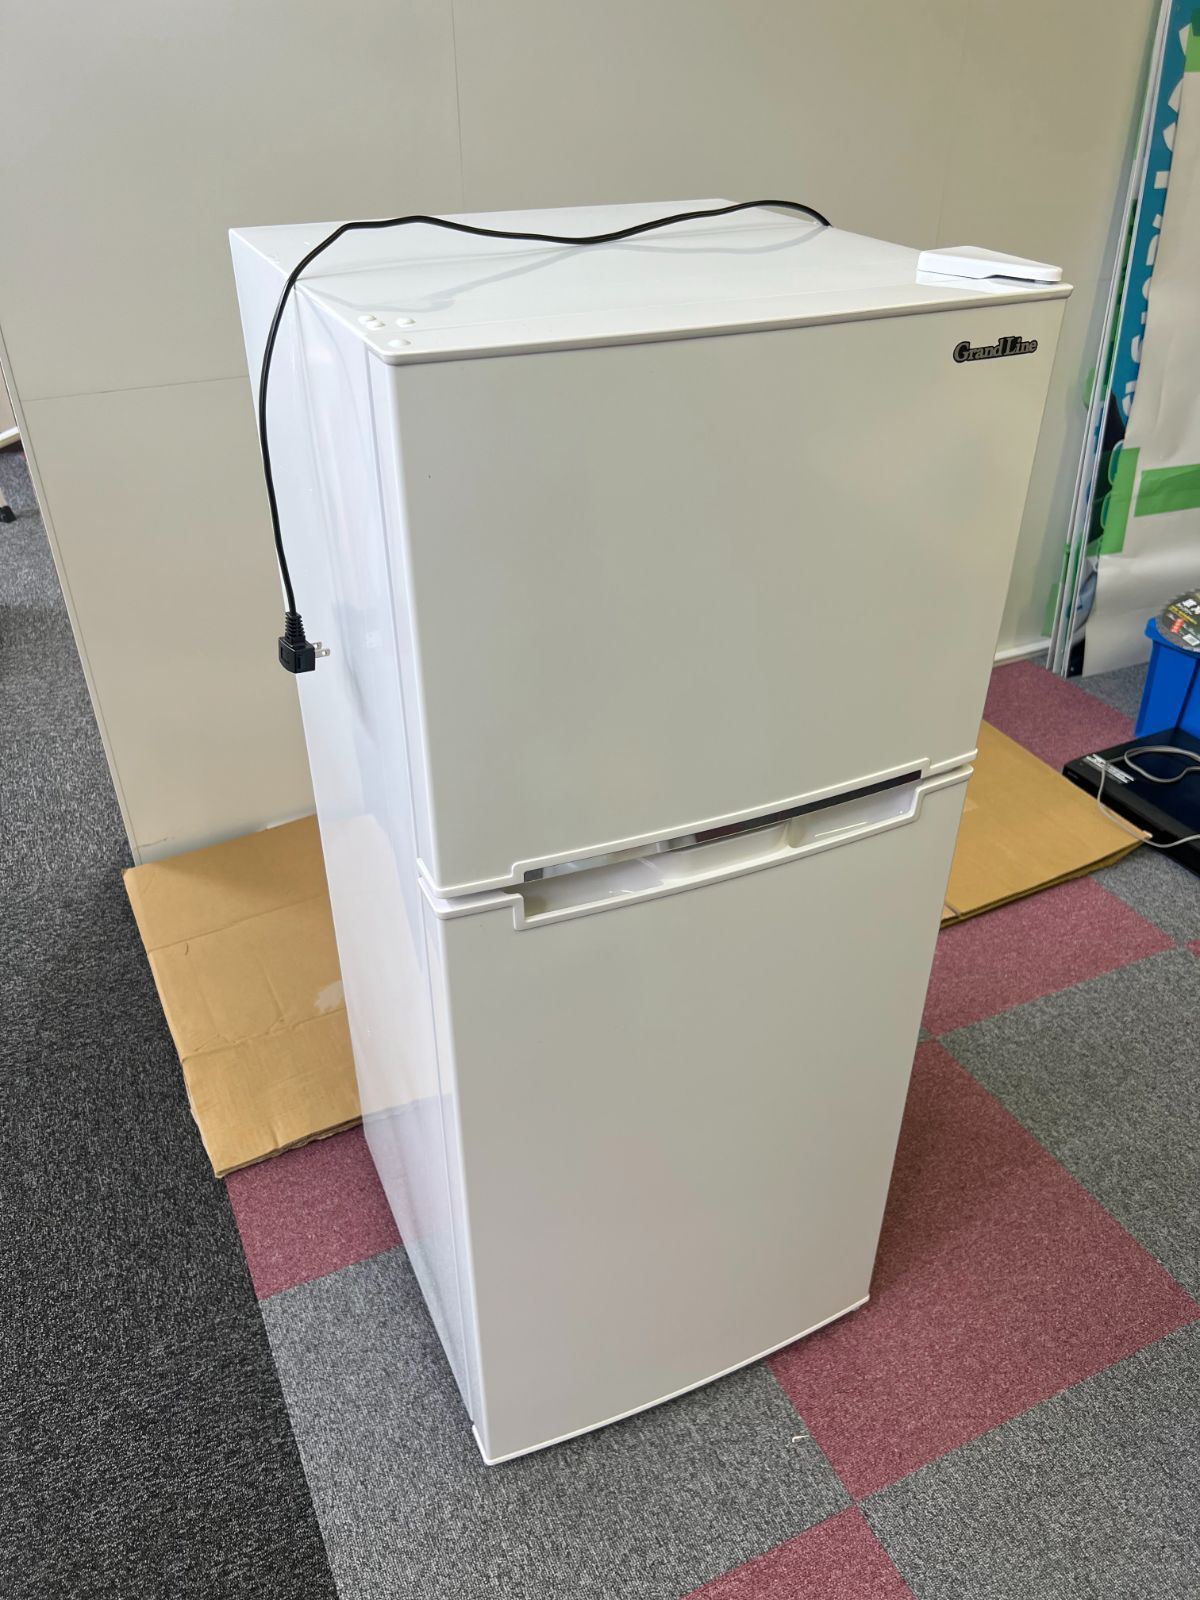 Grand-Line 冷蔵庫 118L 2ドア 冷凍冷蔵庫 ホワイト/白 AR-118L02 